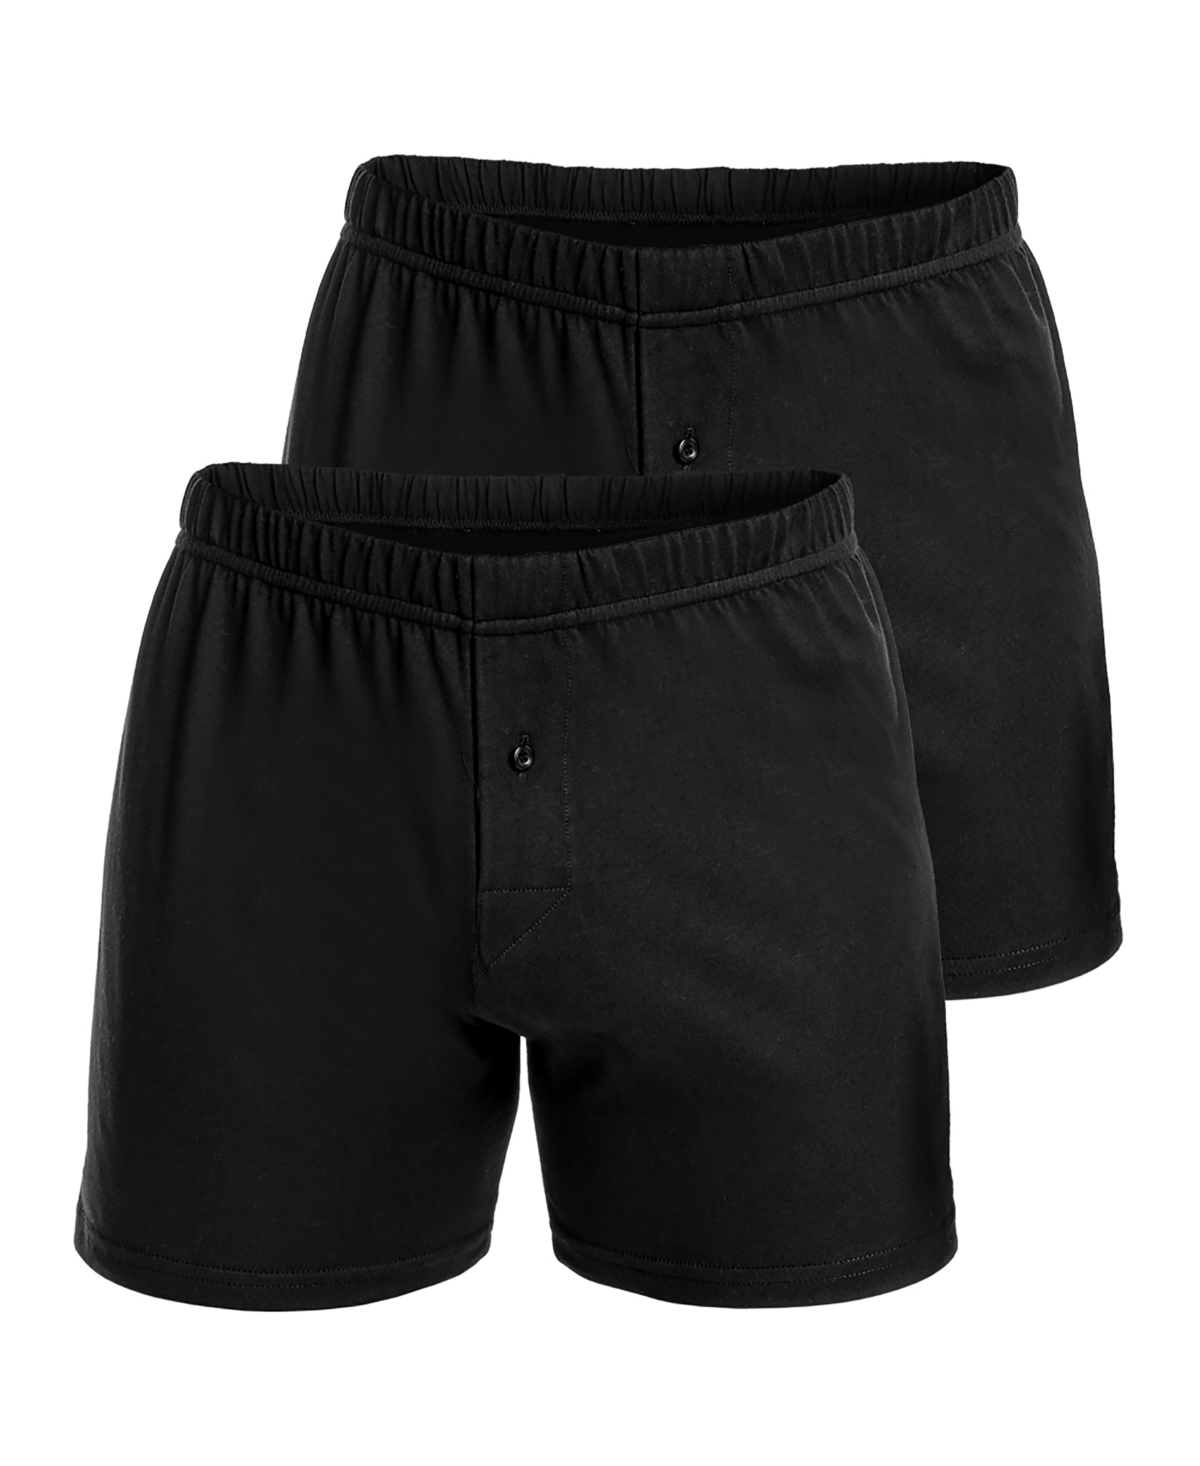 Men's Premium Cotton Knit Boxers, Pack of 2 - Black